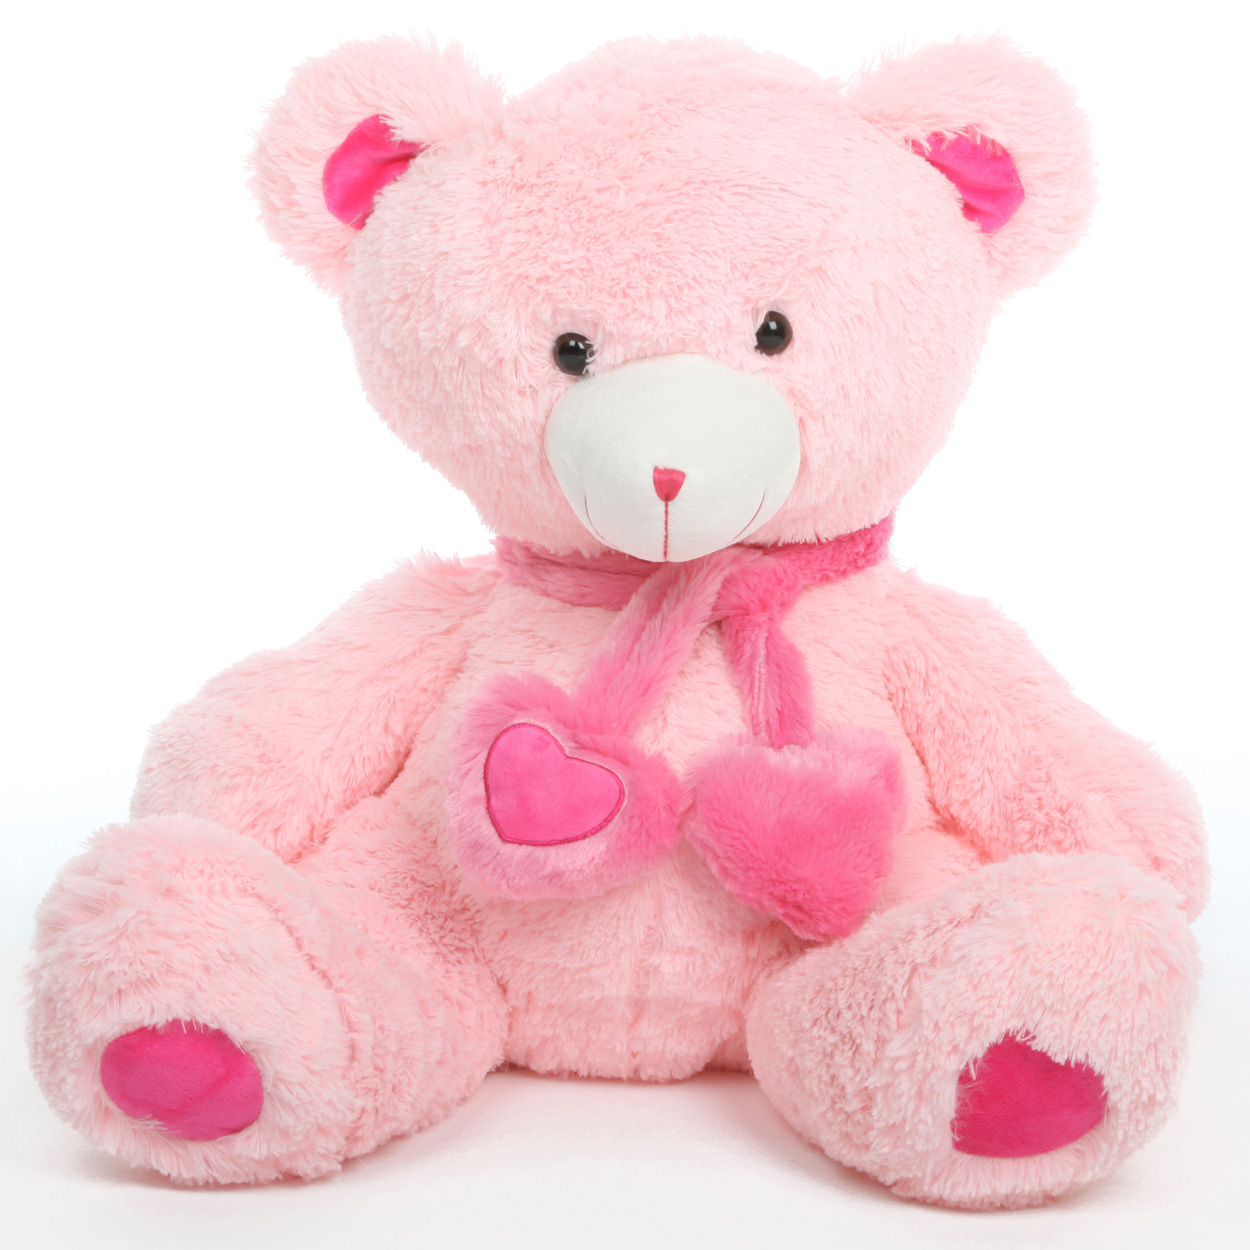 Candy Hugs 30 Adorable Plush Stuffed Teddy Bear Giant Teddy Bears